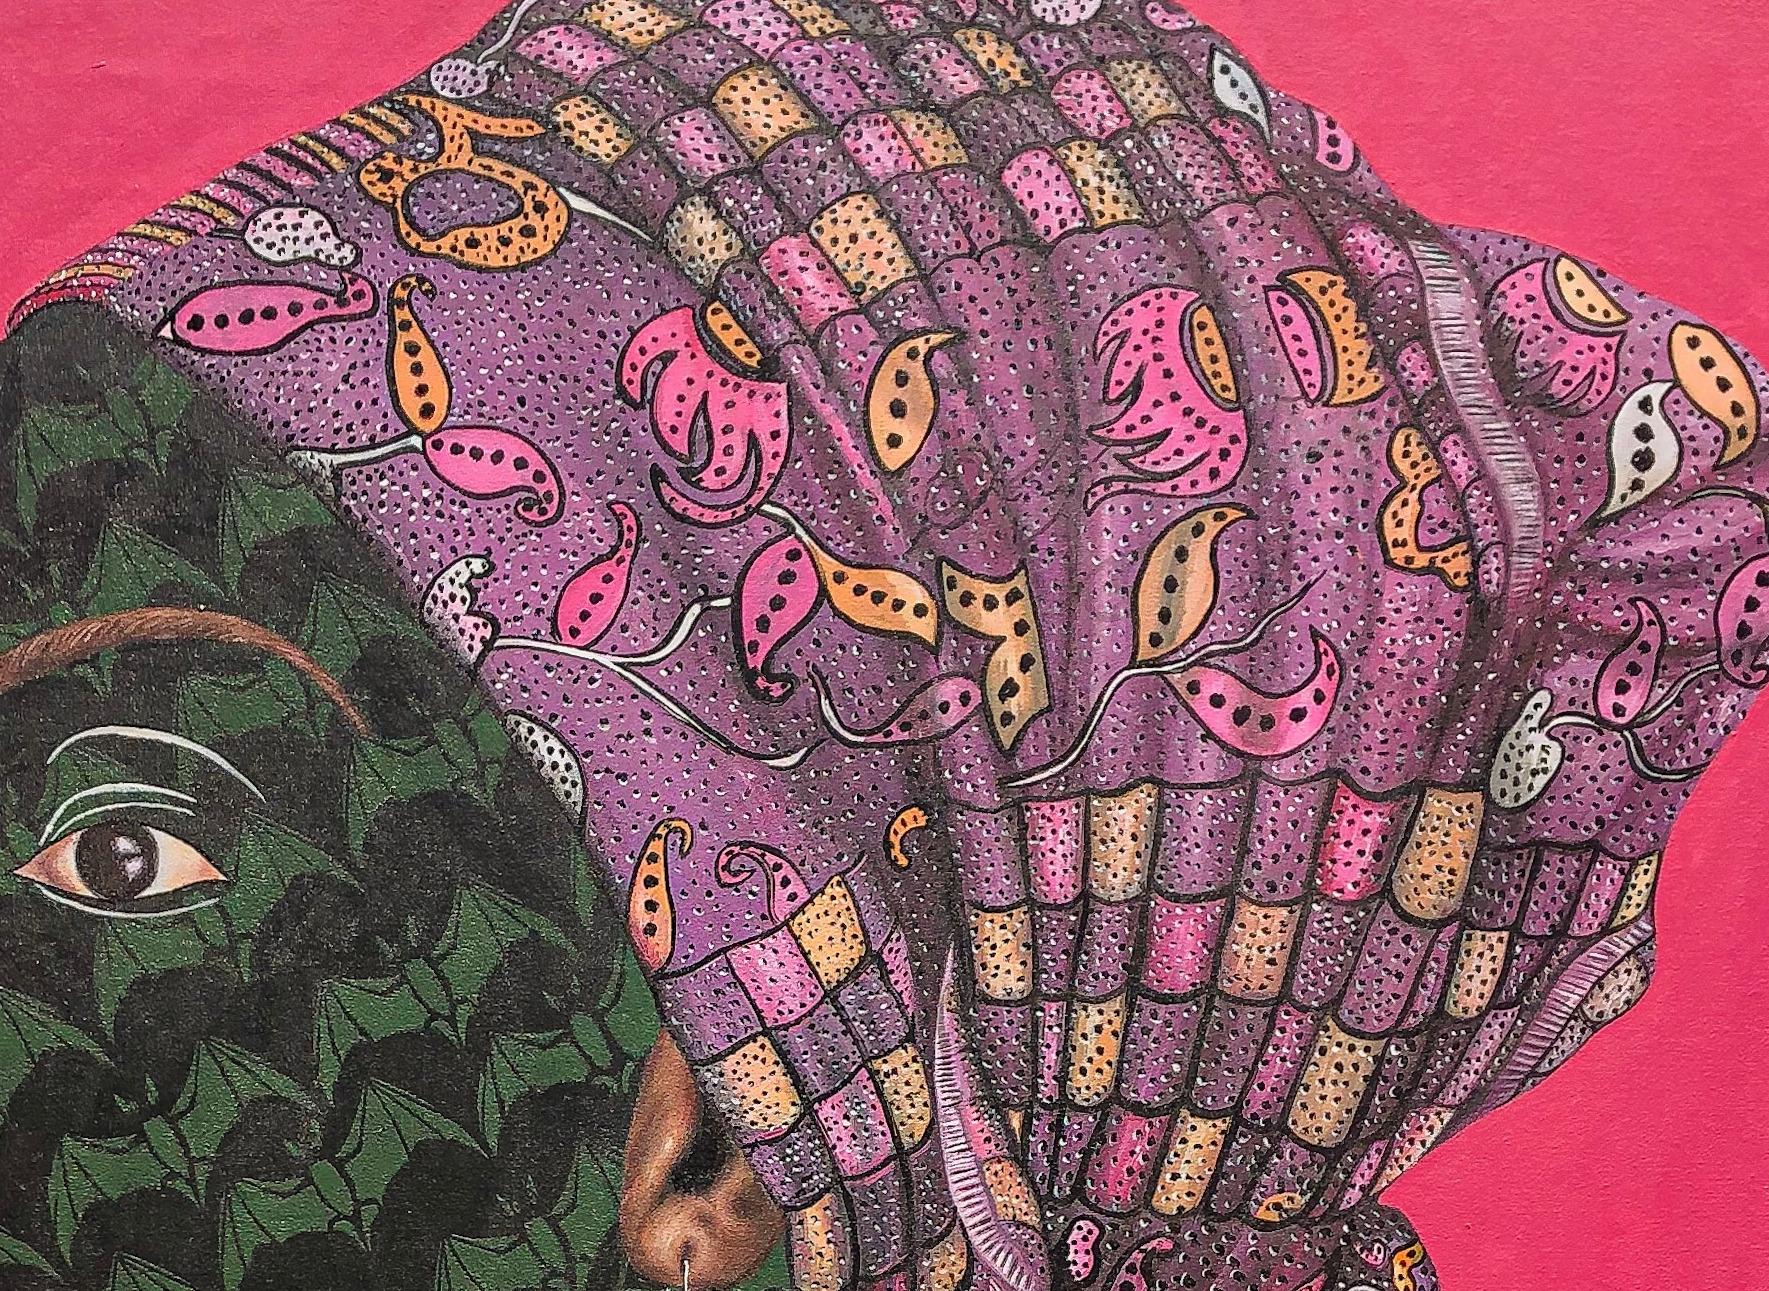 GÈLÈ 3 (Head Tie) - Painting by Oluwafemi Afolabi